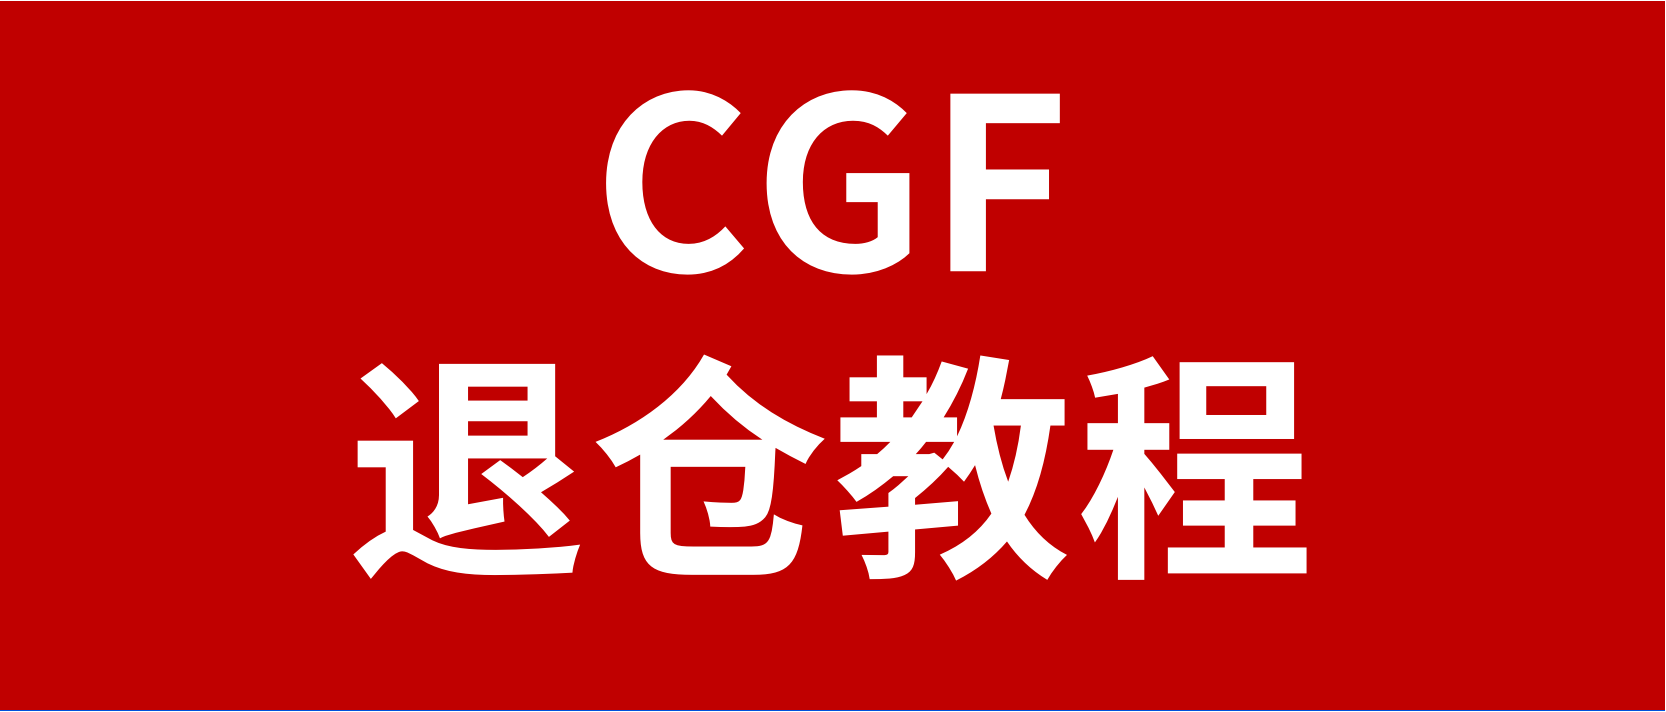 【实操教程】Coupang卖家CGF产品退仓的具体步骤